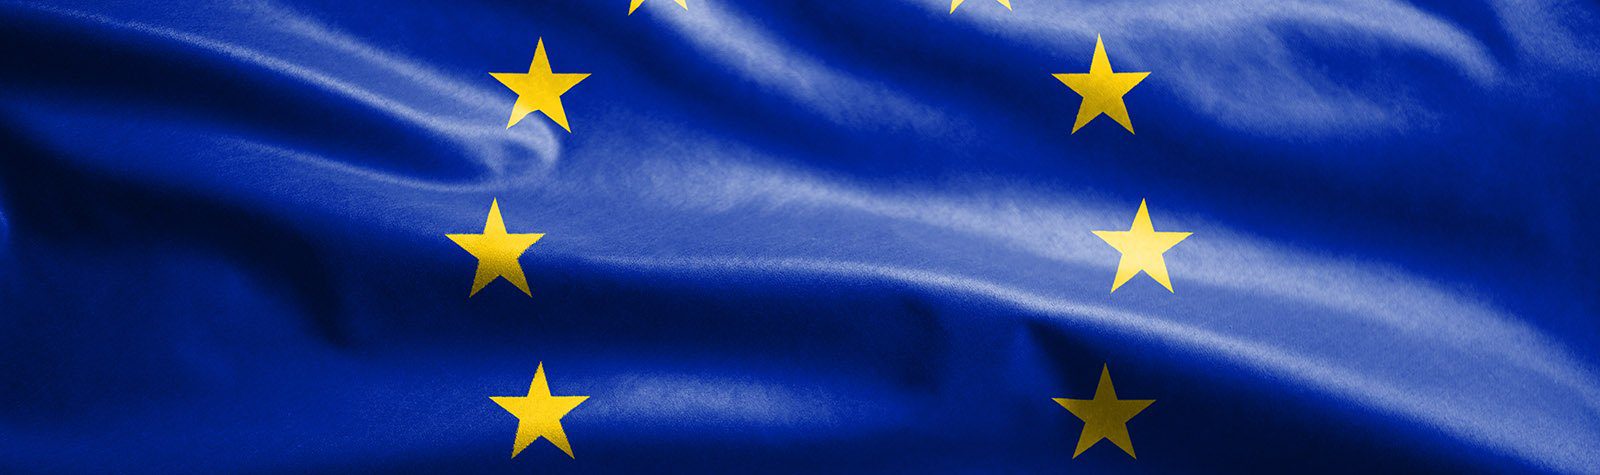 Élet a COVID után – Gazdasági válságkezelés és a kohéziós politika jövője az EU-ban